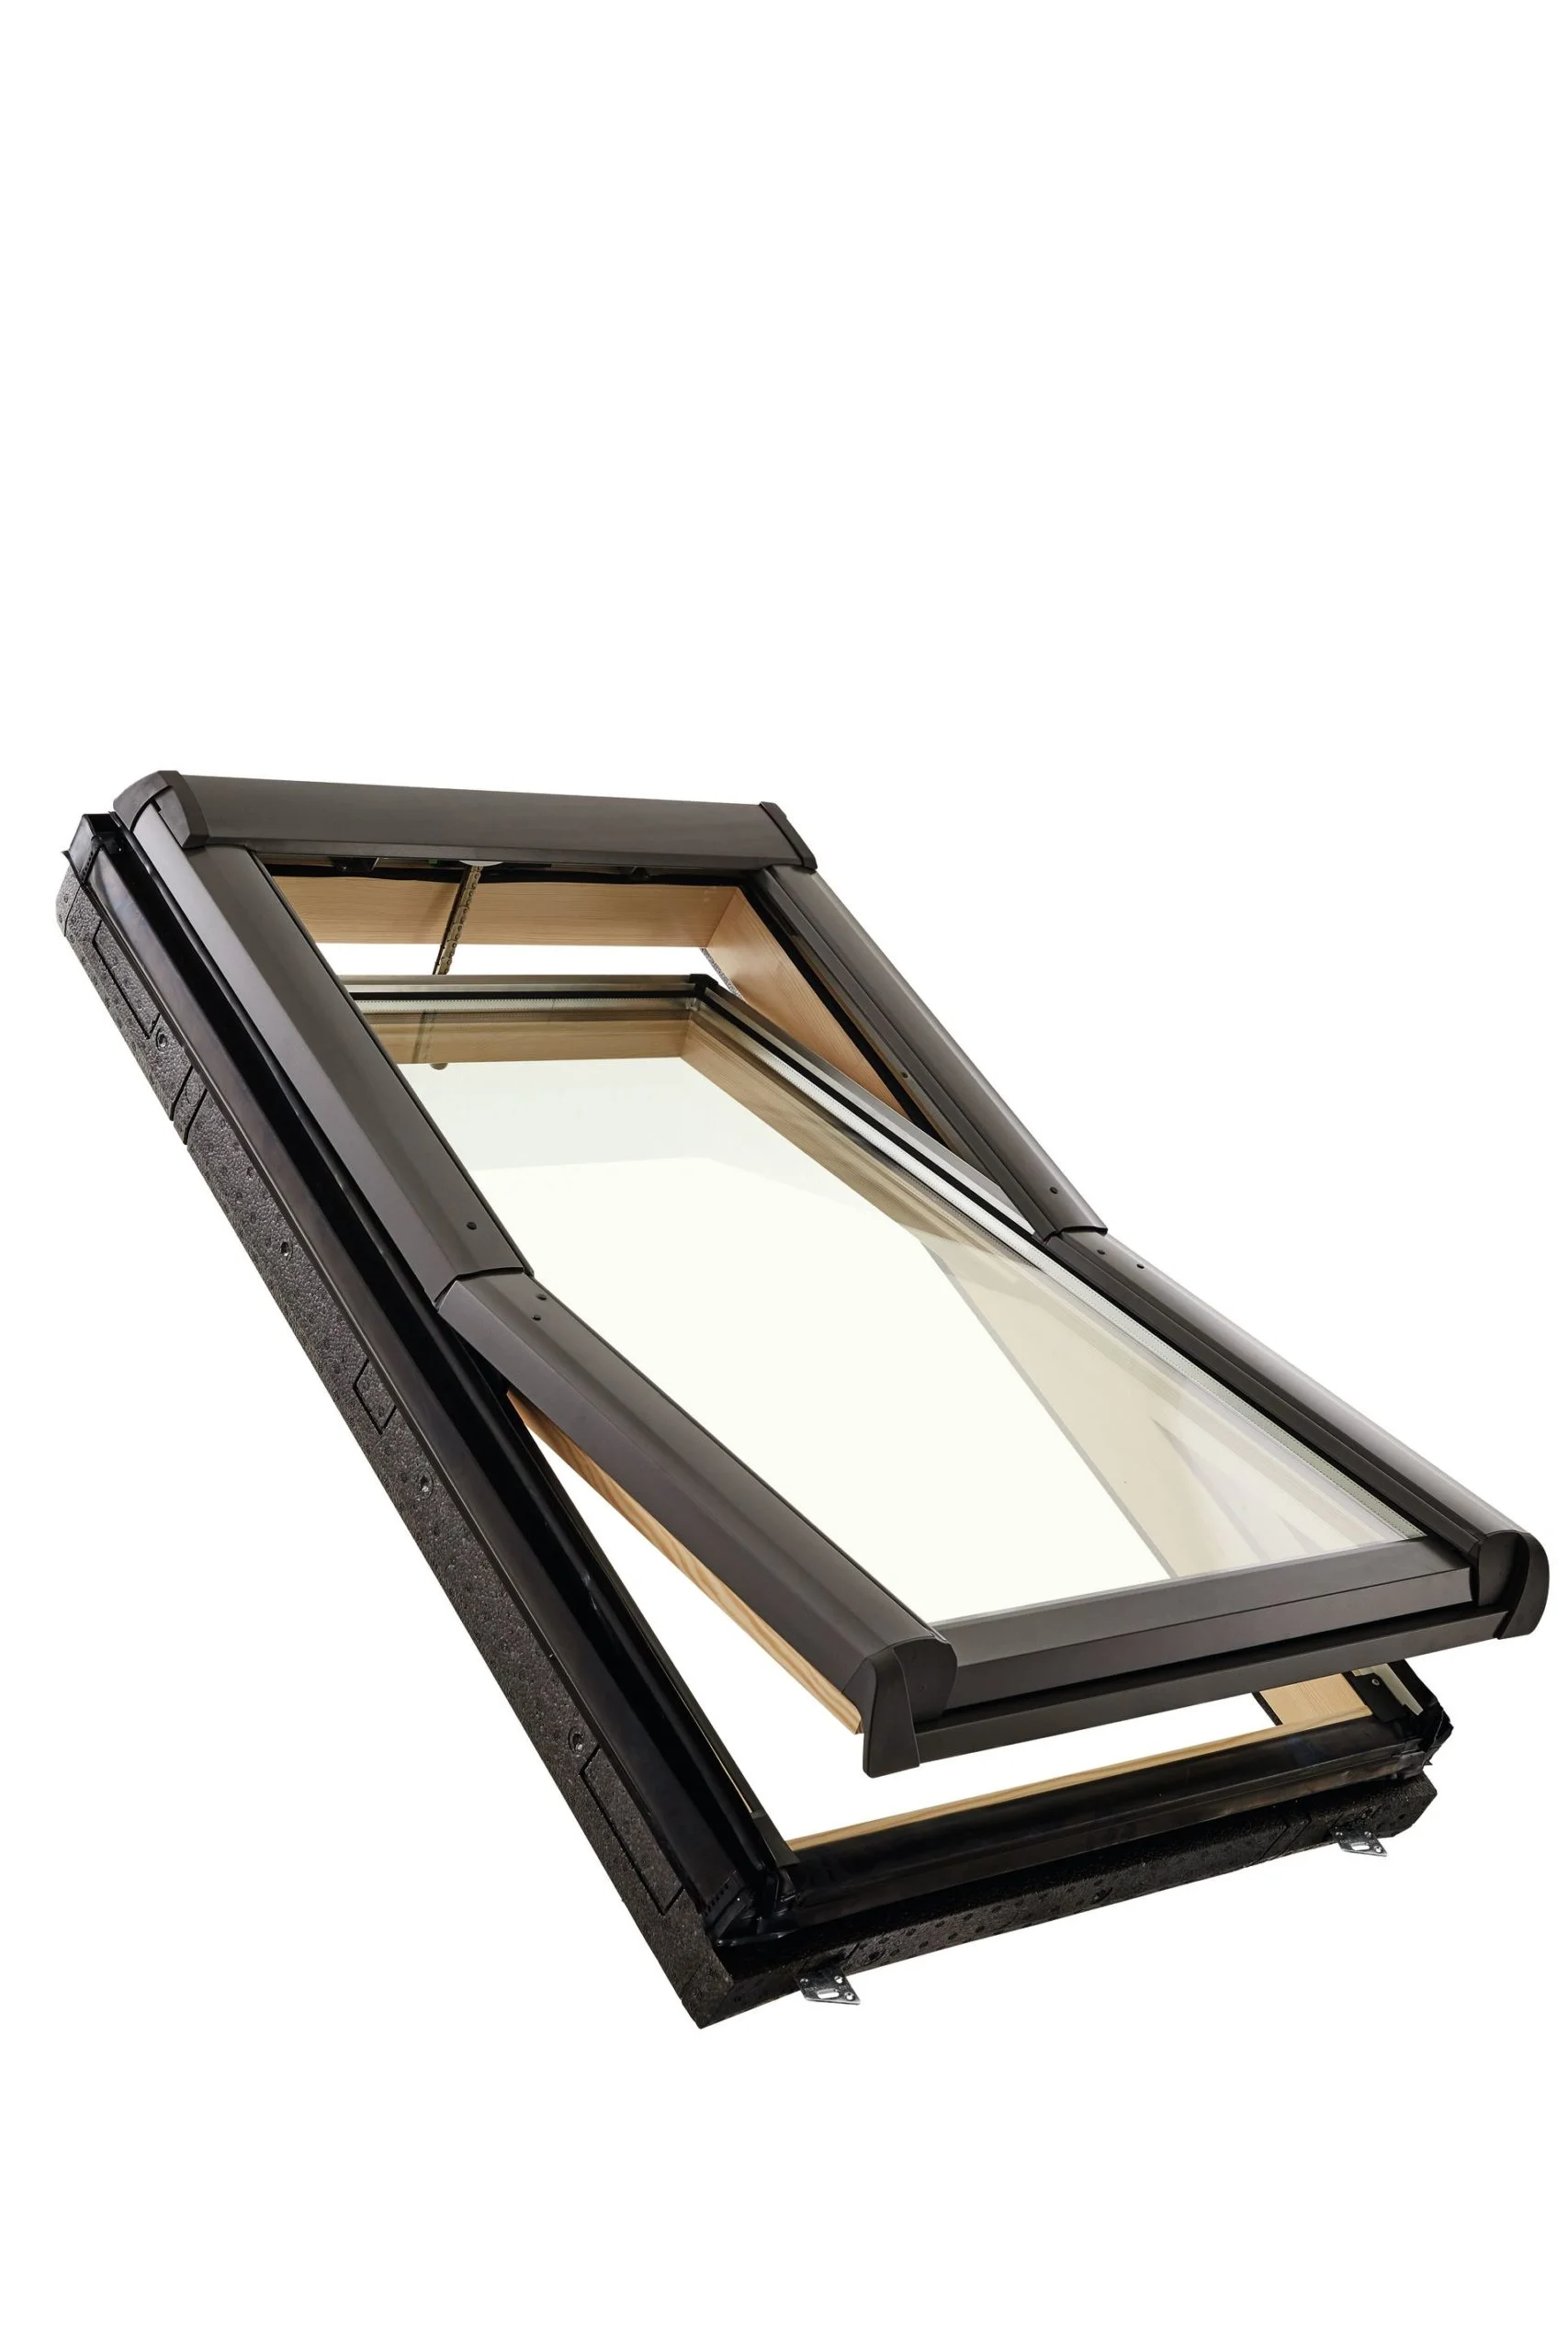 Roto kyvné okno elektrické (EF) Designo R4 drevené trojsklo Standard 54/78 cm